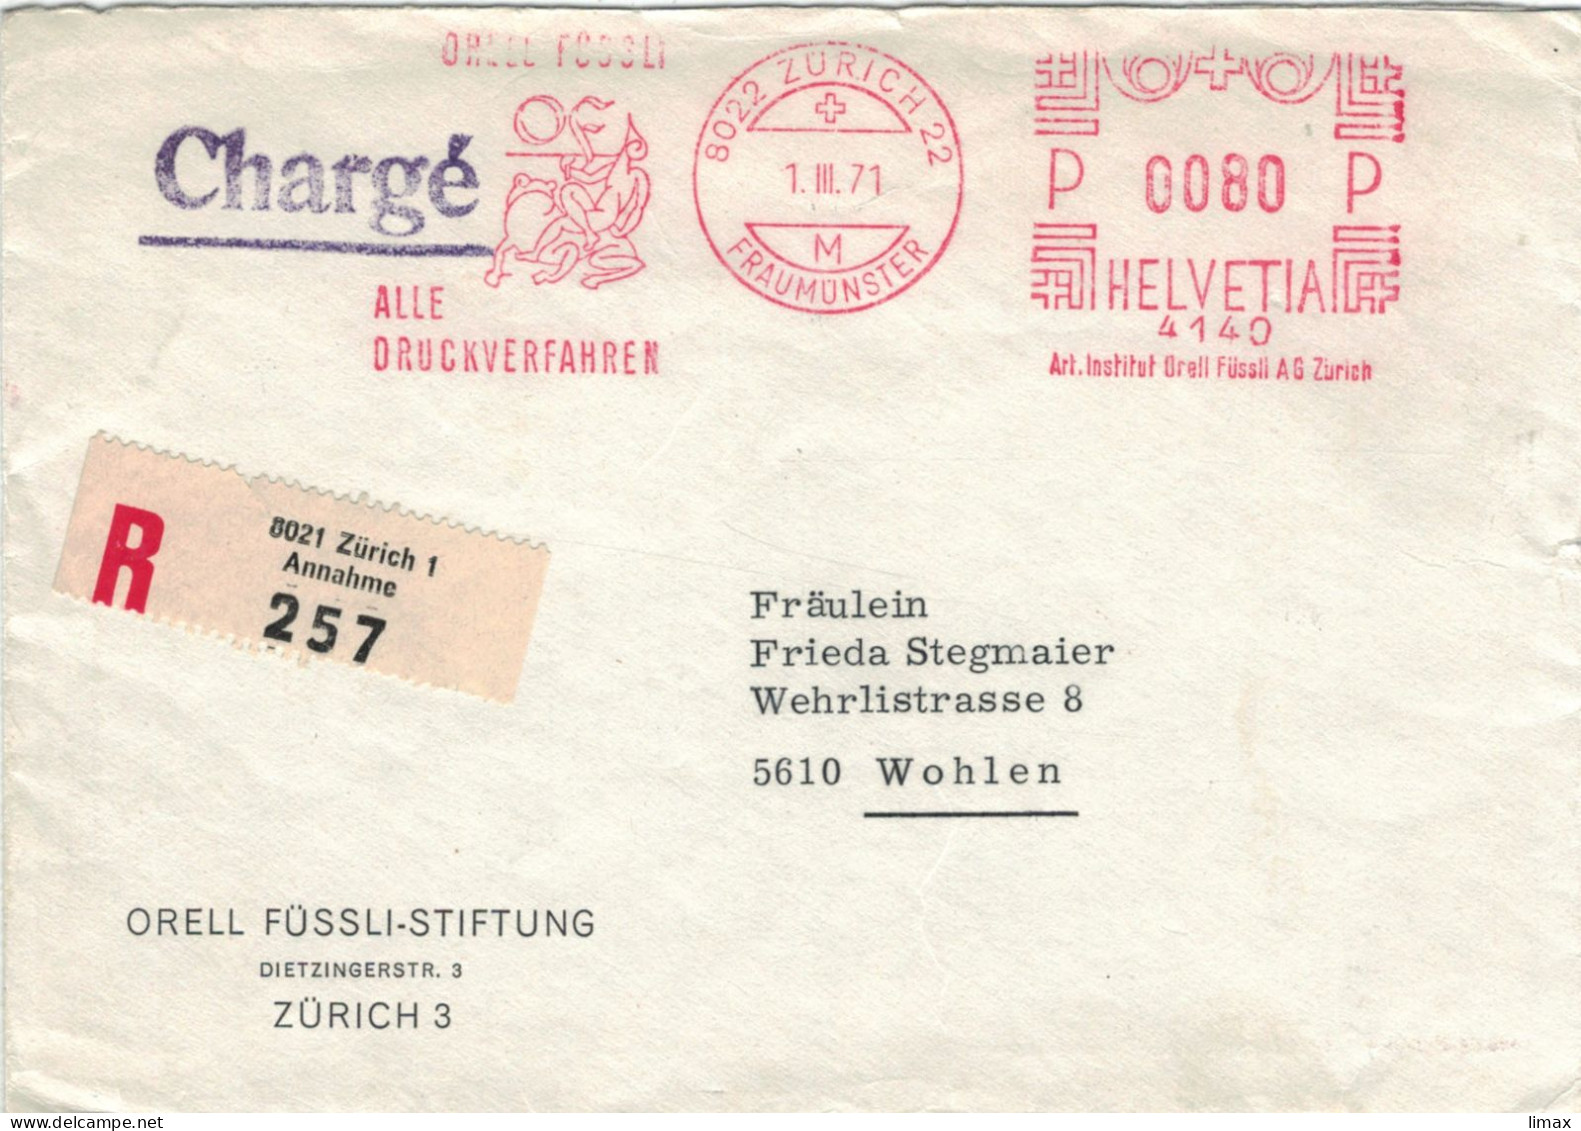 Orell Füssli Alle Druckverfahren 8022 Zürich Fraumünster 1971 No. 4140 - Frosch - Vgl. Froschauersche Druckerei - Postage Meters